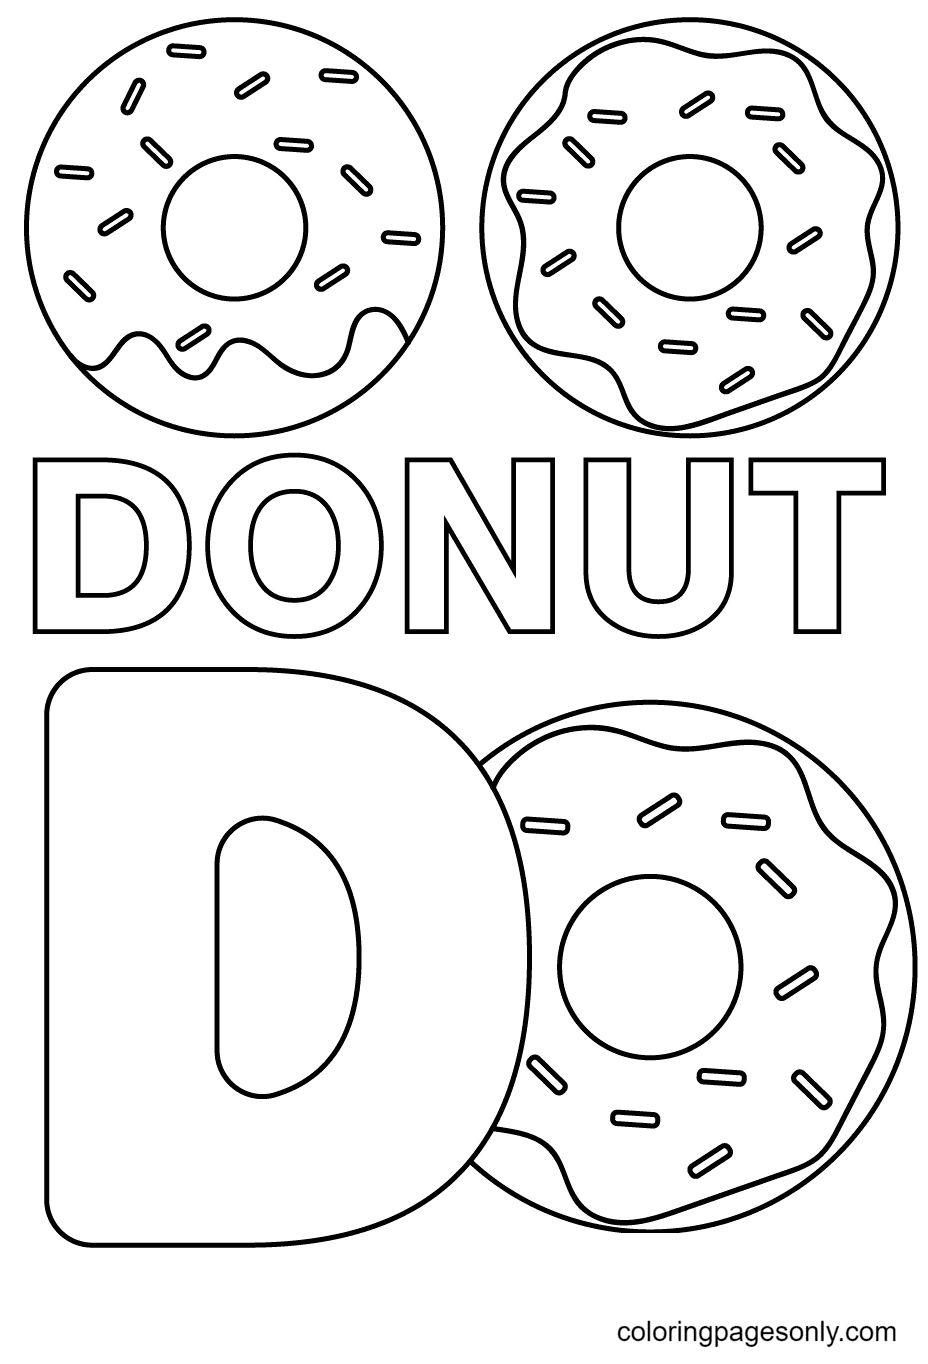 D es para Donut Página para colorear